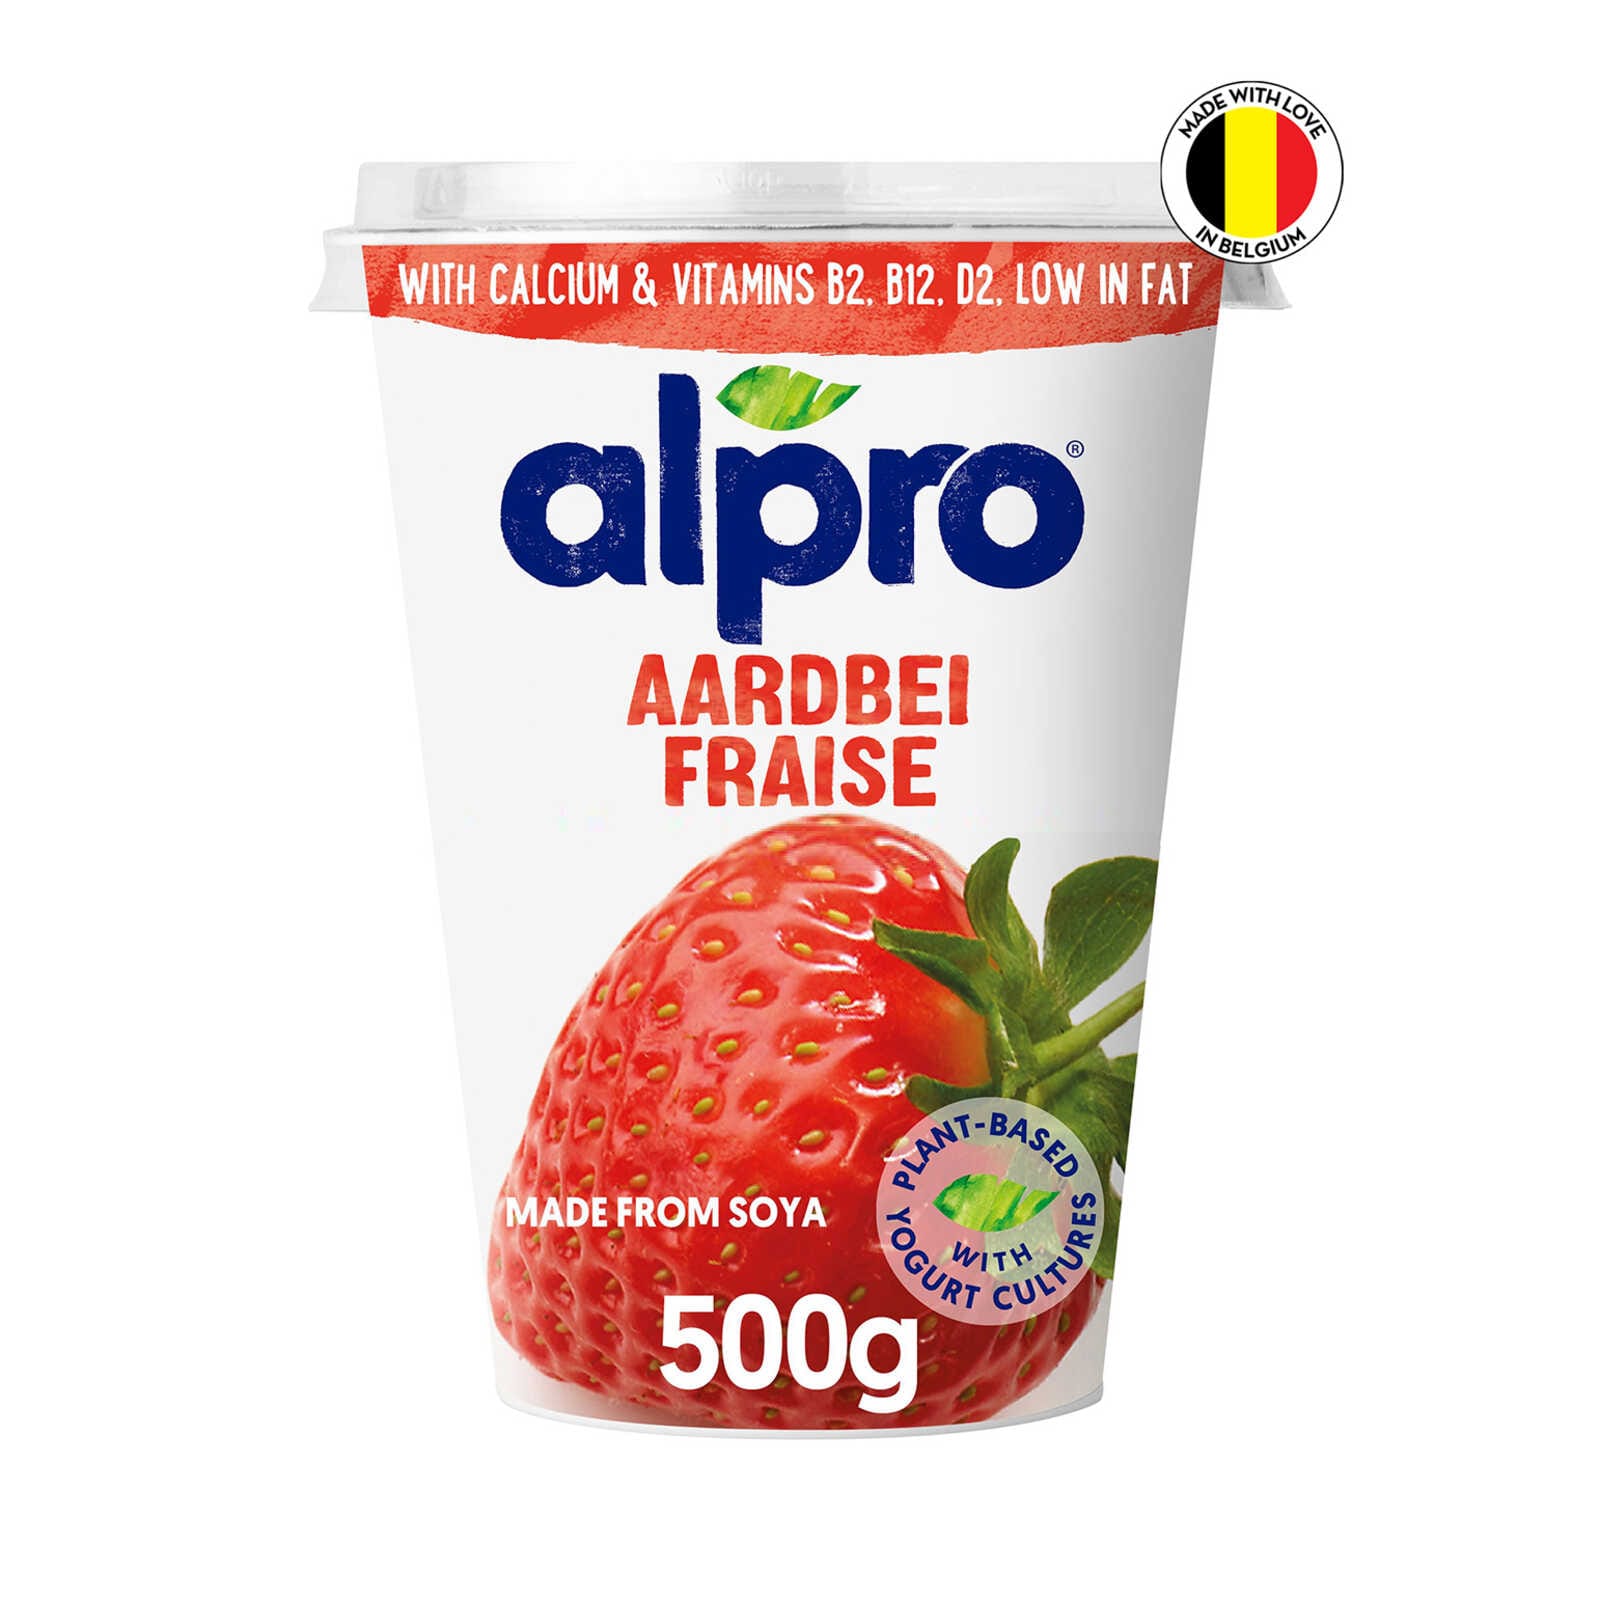 Alpro Protéiné Alternative Végétale au Yaourt aux Fruits Rouges